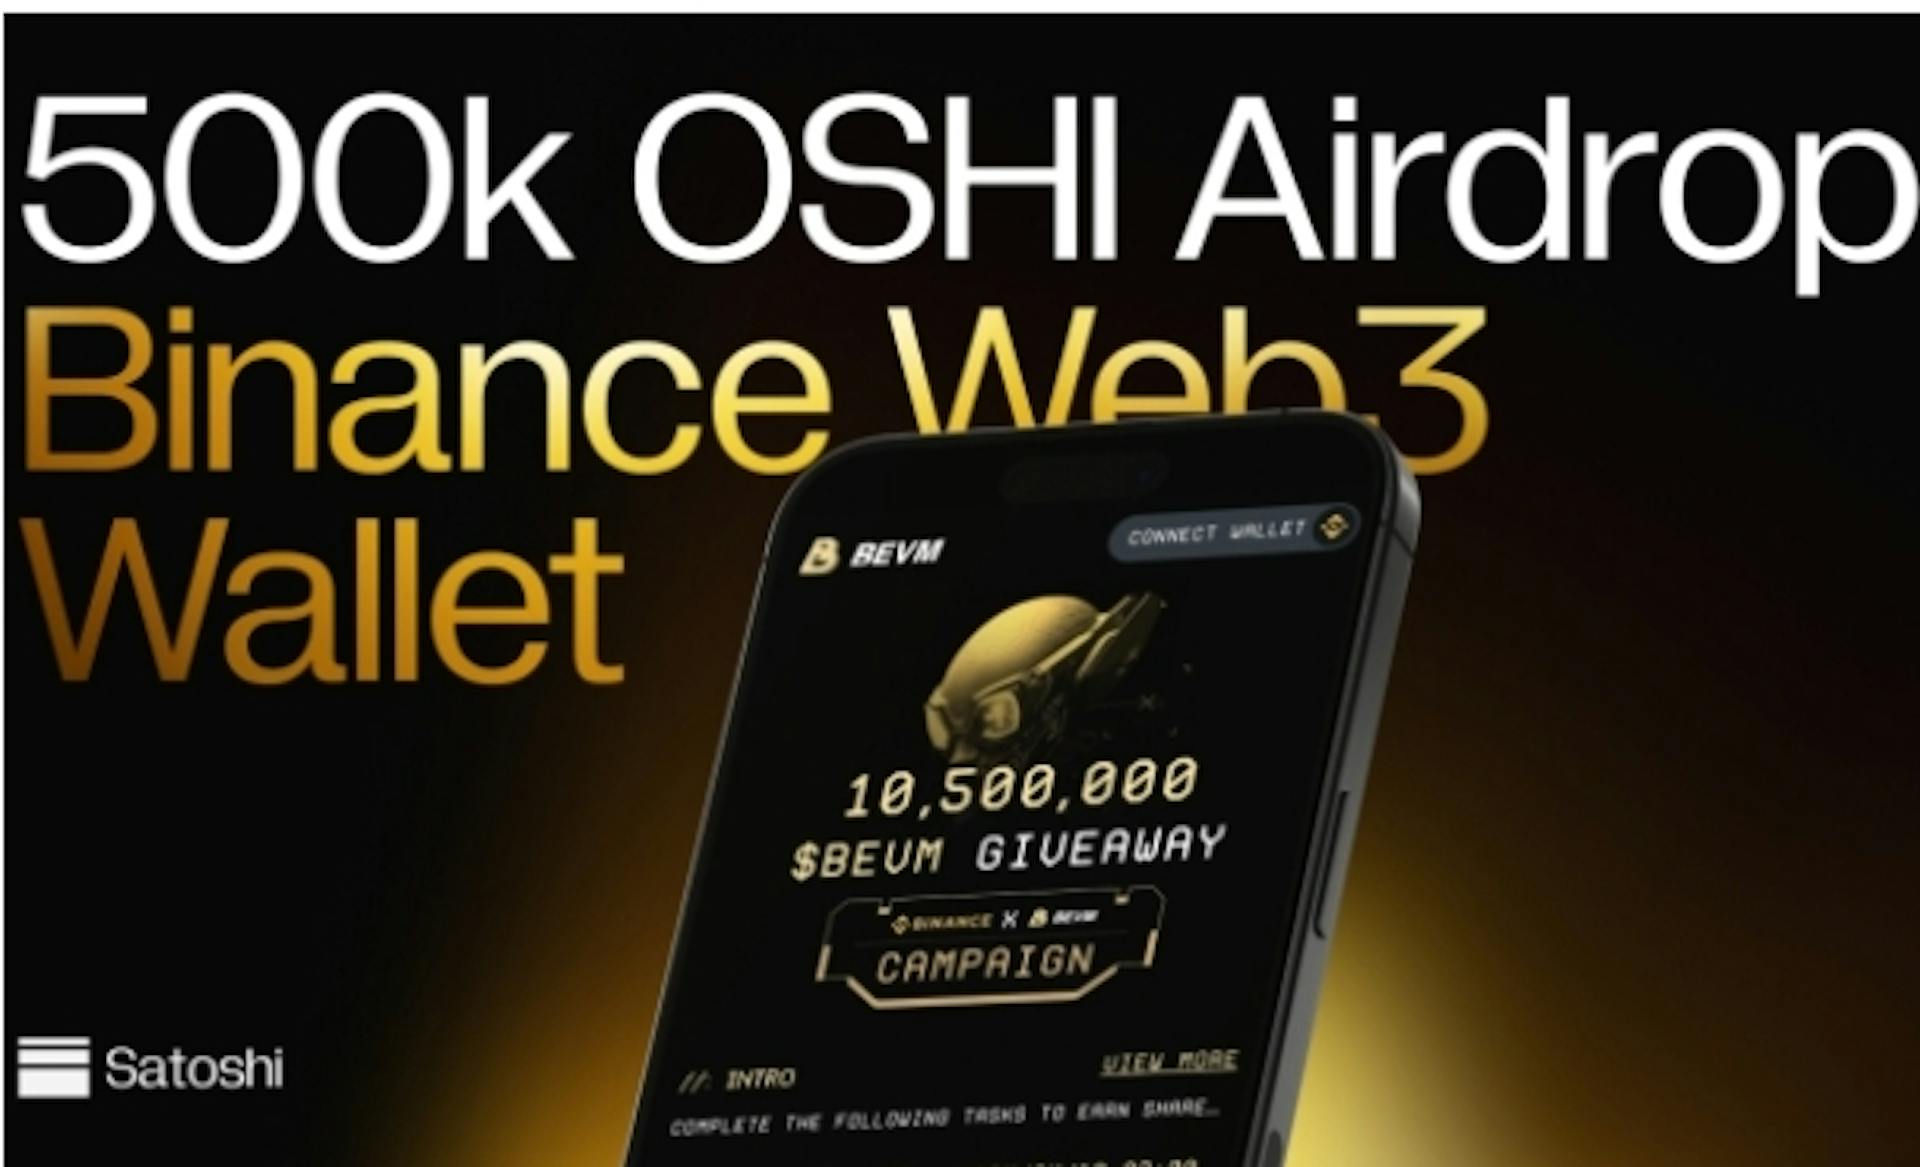 featured image - Protocolo Satoshi: primer CDP en Bitcoin Layer2, lanzamiento aéreo de 500k OSHI con Binance Wallet y BEVM